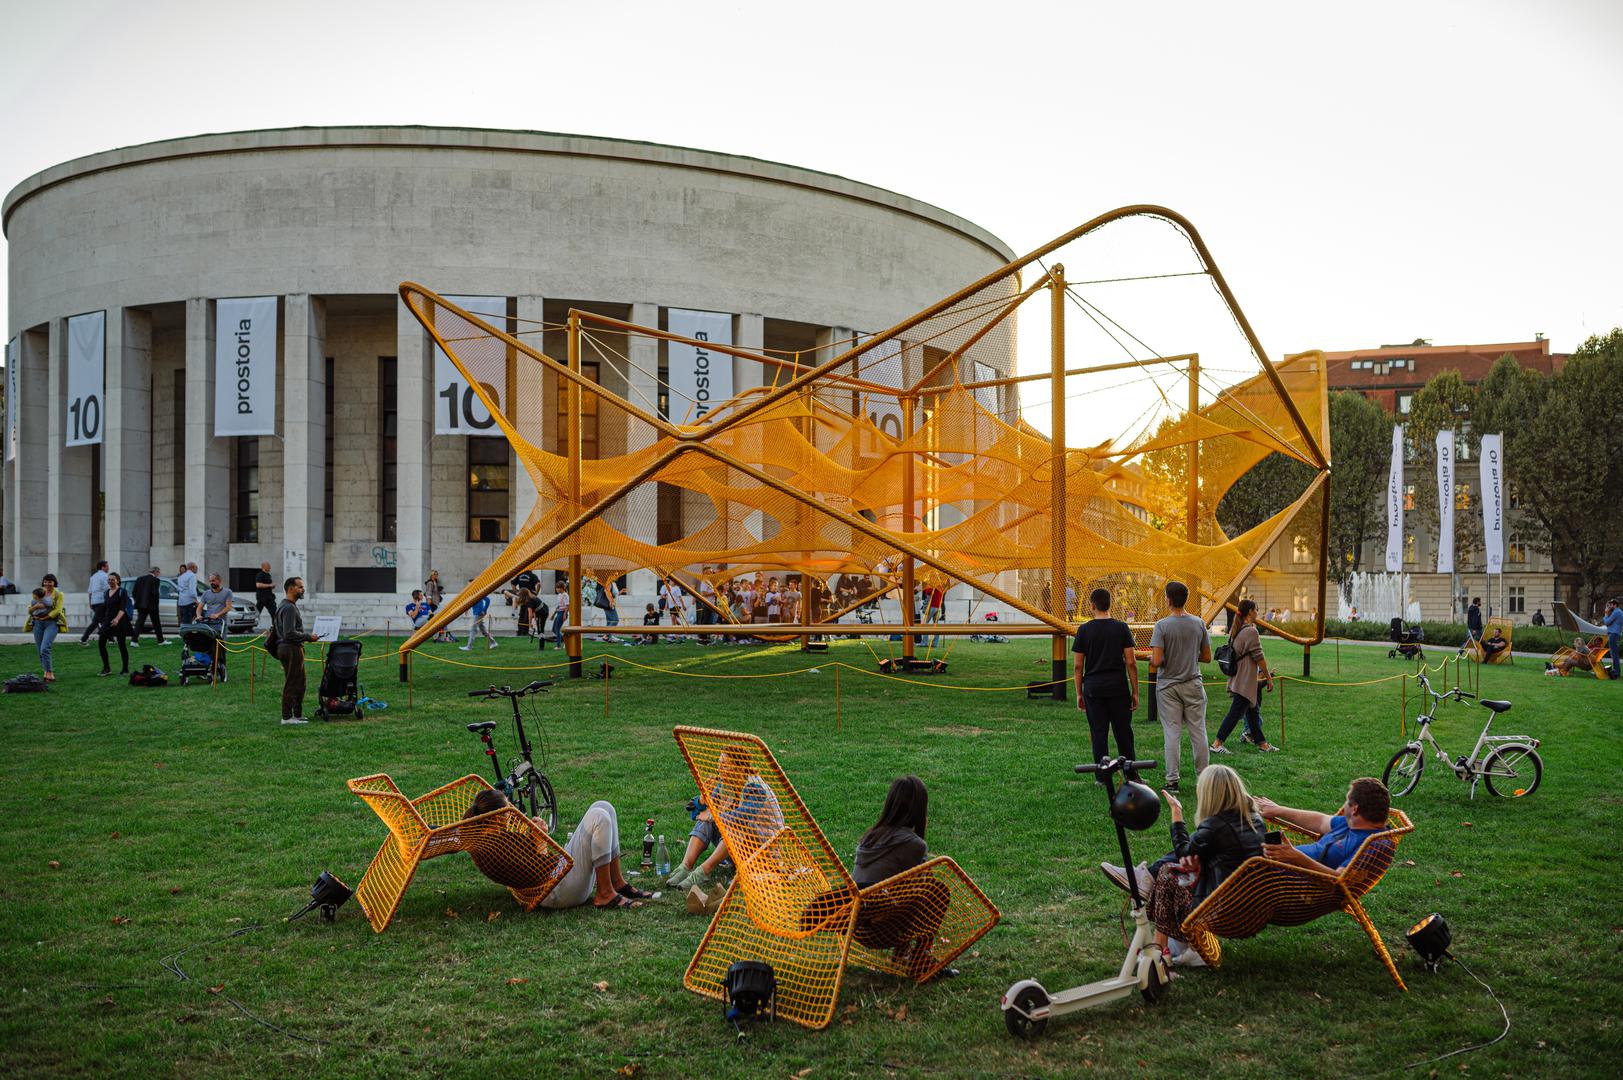 . Umjetnička instalacija Prostoria Net koja se poput velikog urbanog namještaja prostire na travnjaku ispred Paviljona, poseban je dar građanima za druženje, a objeručke je prihvaćena od svih generacija kao dnevni boravak na otvorenom